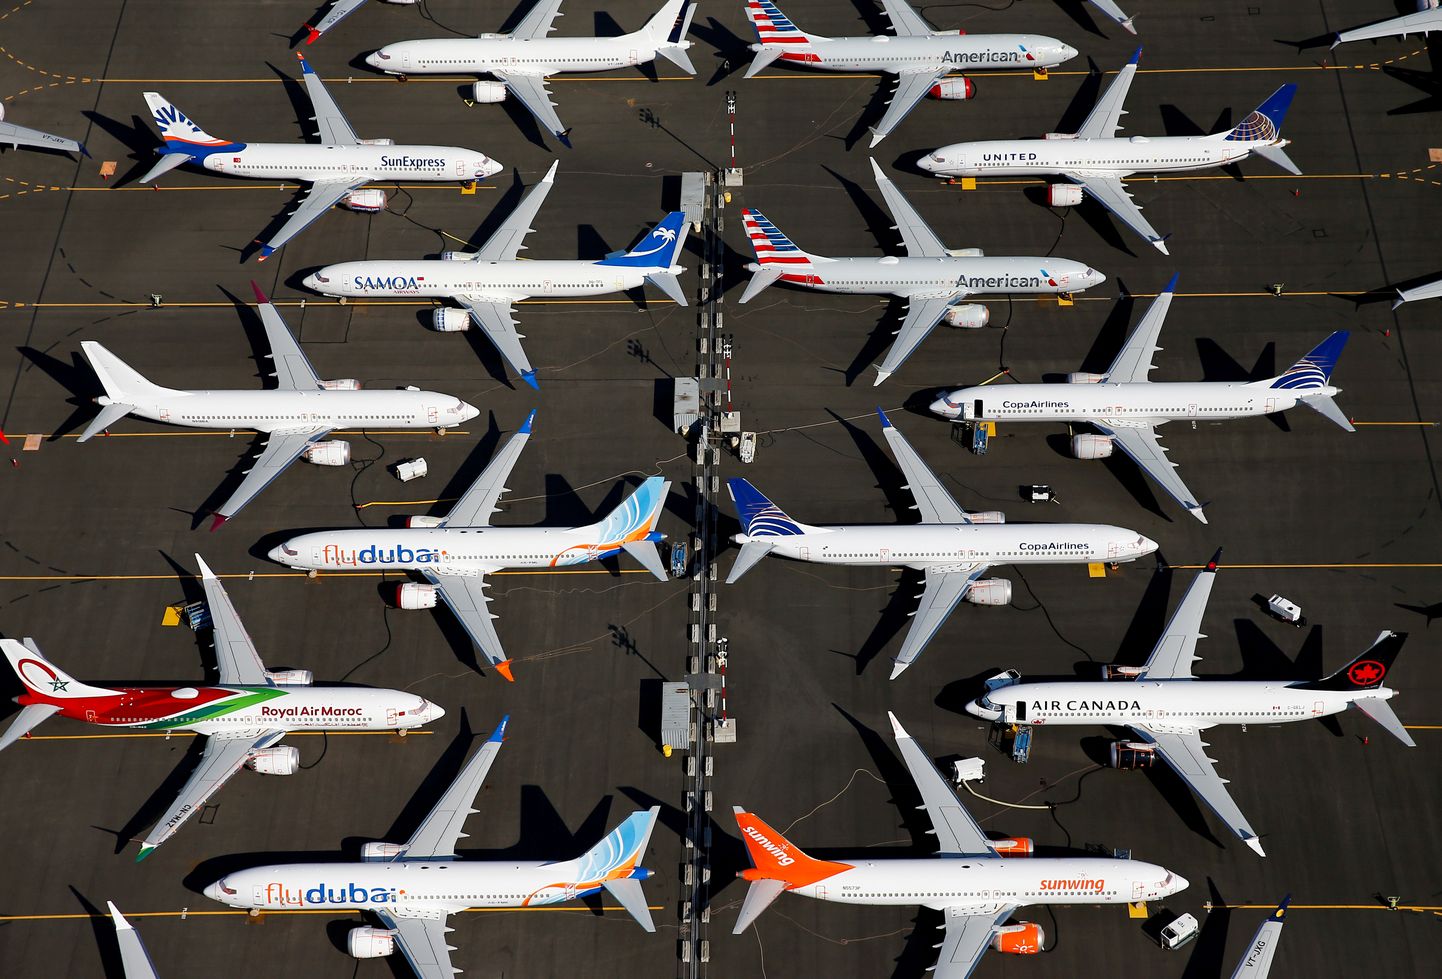 Lennukeelu all olevad Boeing 737 MAX reisilennukid seismas Seattle'is.